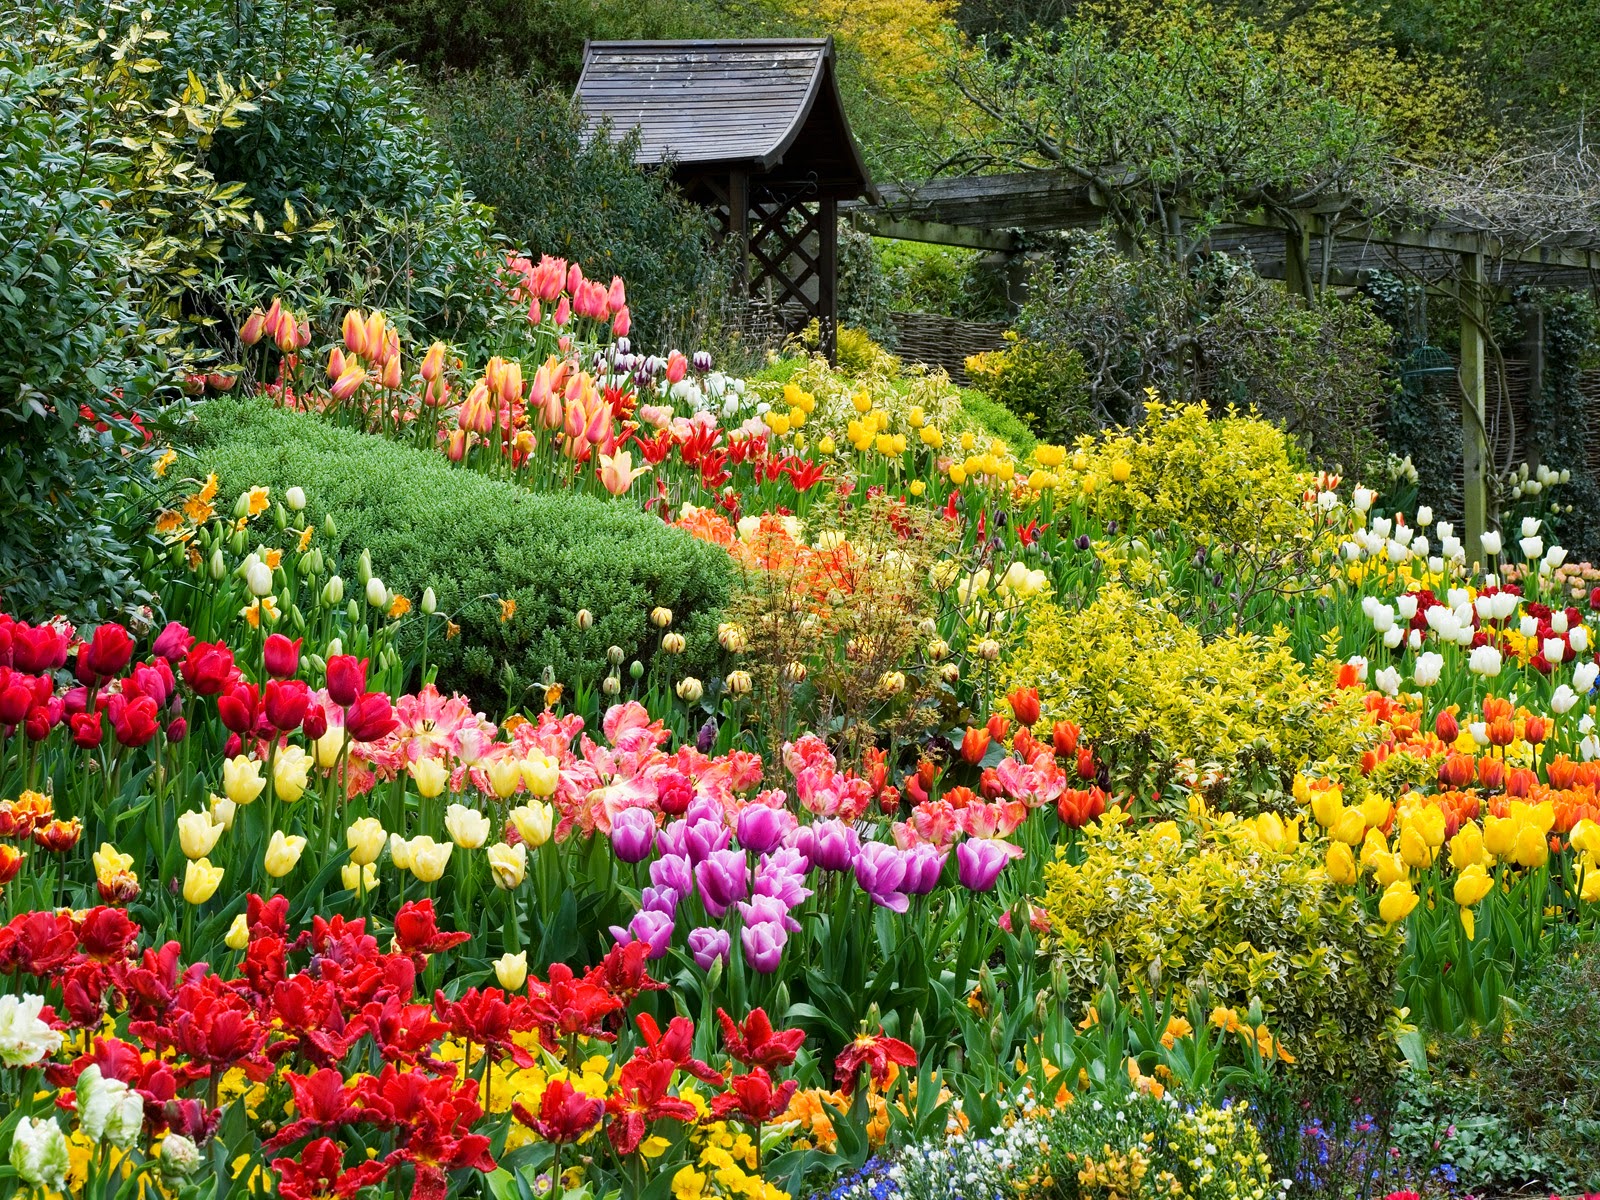 Vườn hoa Đà Lạt: Nơi đây có lẽ là thiên đường hoa của Việt Nam. Vườn hoa Đà Lạt sẽ khiến bạn ngất ngây trước hàng trăm loài hoa đặc trưng, cùng khí hậu mát mẻ và ẩm thực đặc sắc của núi rừng Tây Nguyên. Đừng bỏ lỡ cơ hội thưởng ngoạn hoa tại Đà Lạt – điểm đến du lịch lý tưởng của mùa xuân.